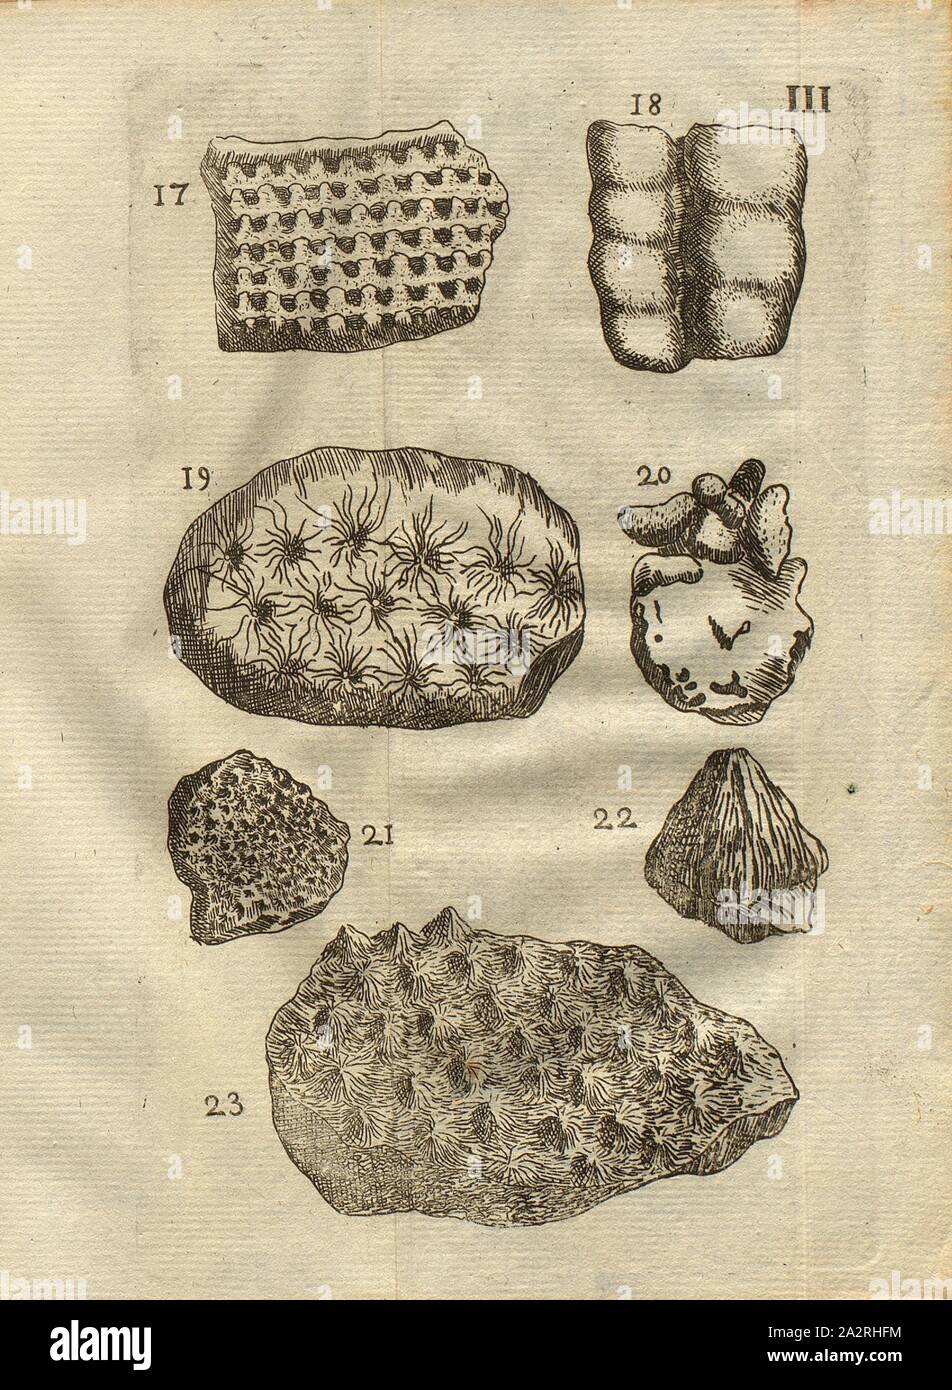 Various types of mushrooms, Madrepore, Alcyons, Classe I, Pl. III., Fig. 17: Espèce de champignon, ou de Madrepore astroite plate, Fig. 18: Alcyon articulé, Fig. 19: Champignon appellé Astroite, or Pierre étoilée, Fig. 20: Alcyon de Dioscoride, Fig. 21: Champignon à, petites étoiles, Fig. 22: Cône rayé d'un champignon de mer, Fig. 23: Champignon de mer à oetits cônes rayés de relief, pl. III, after p. 312, 1778, Louis Bourget: Traité des pétrifications. Paris: Jombert, 1778 Stock Photo